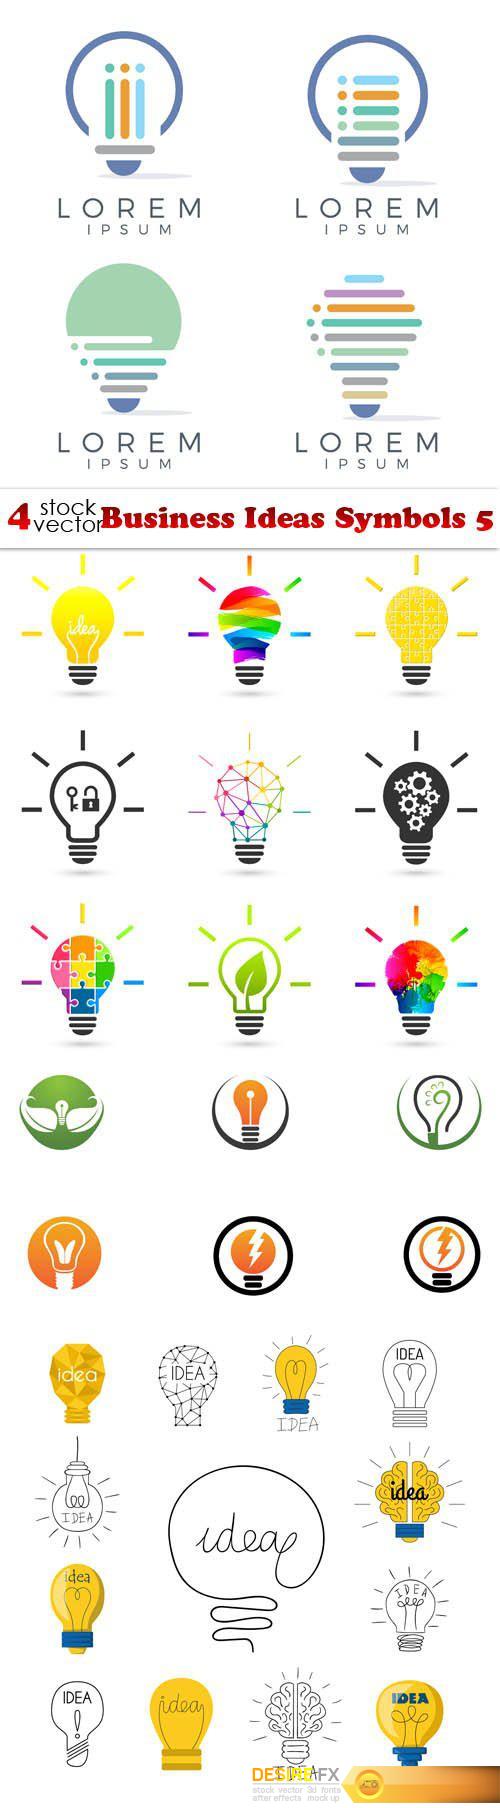 Vectors - Business Ideas Symbols 5